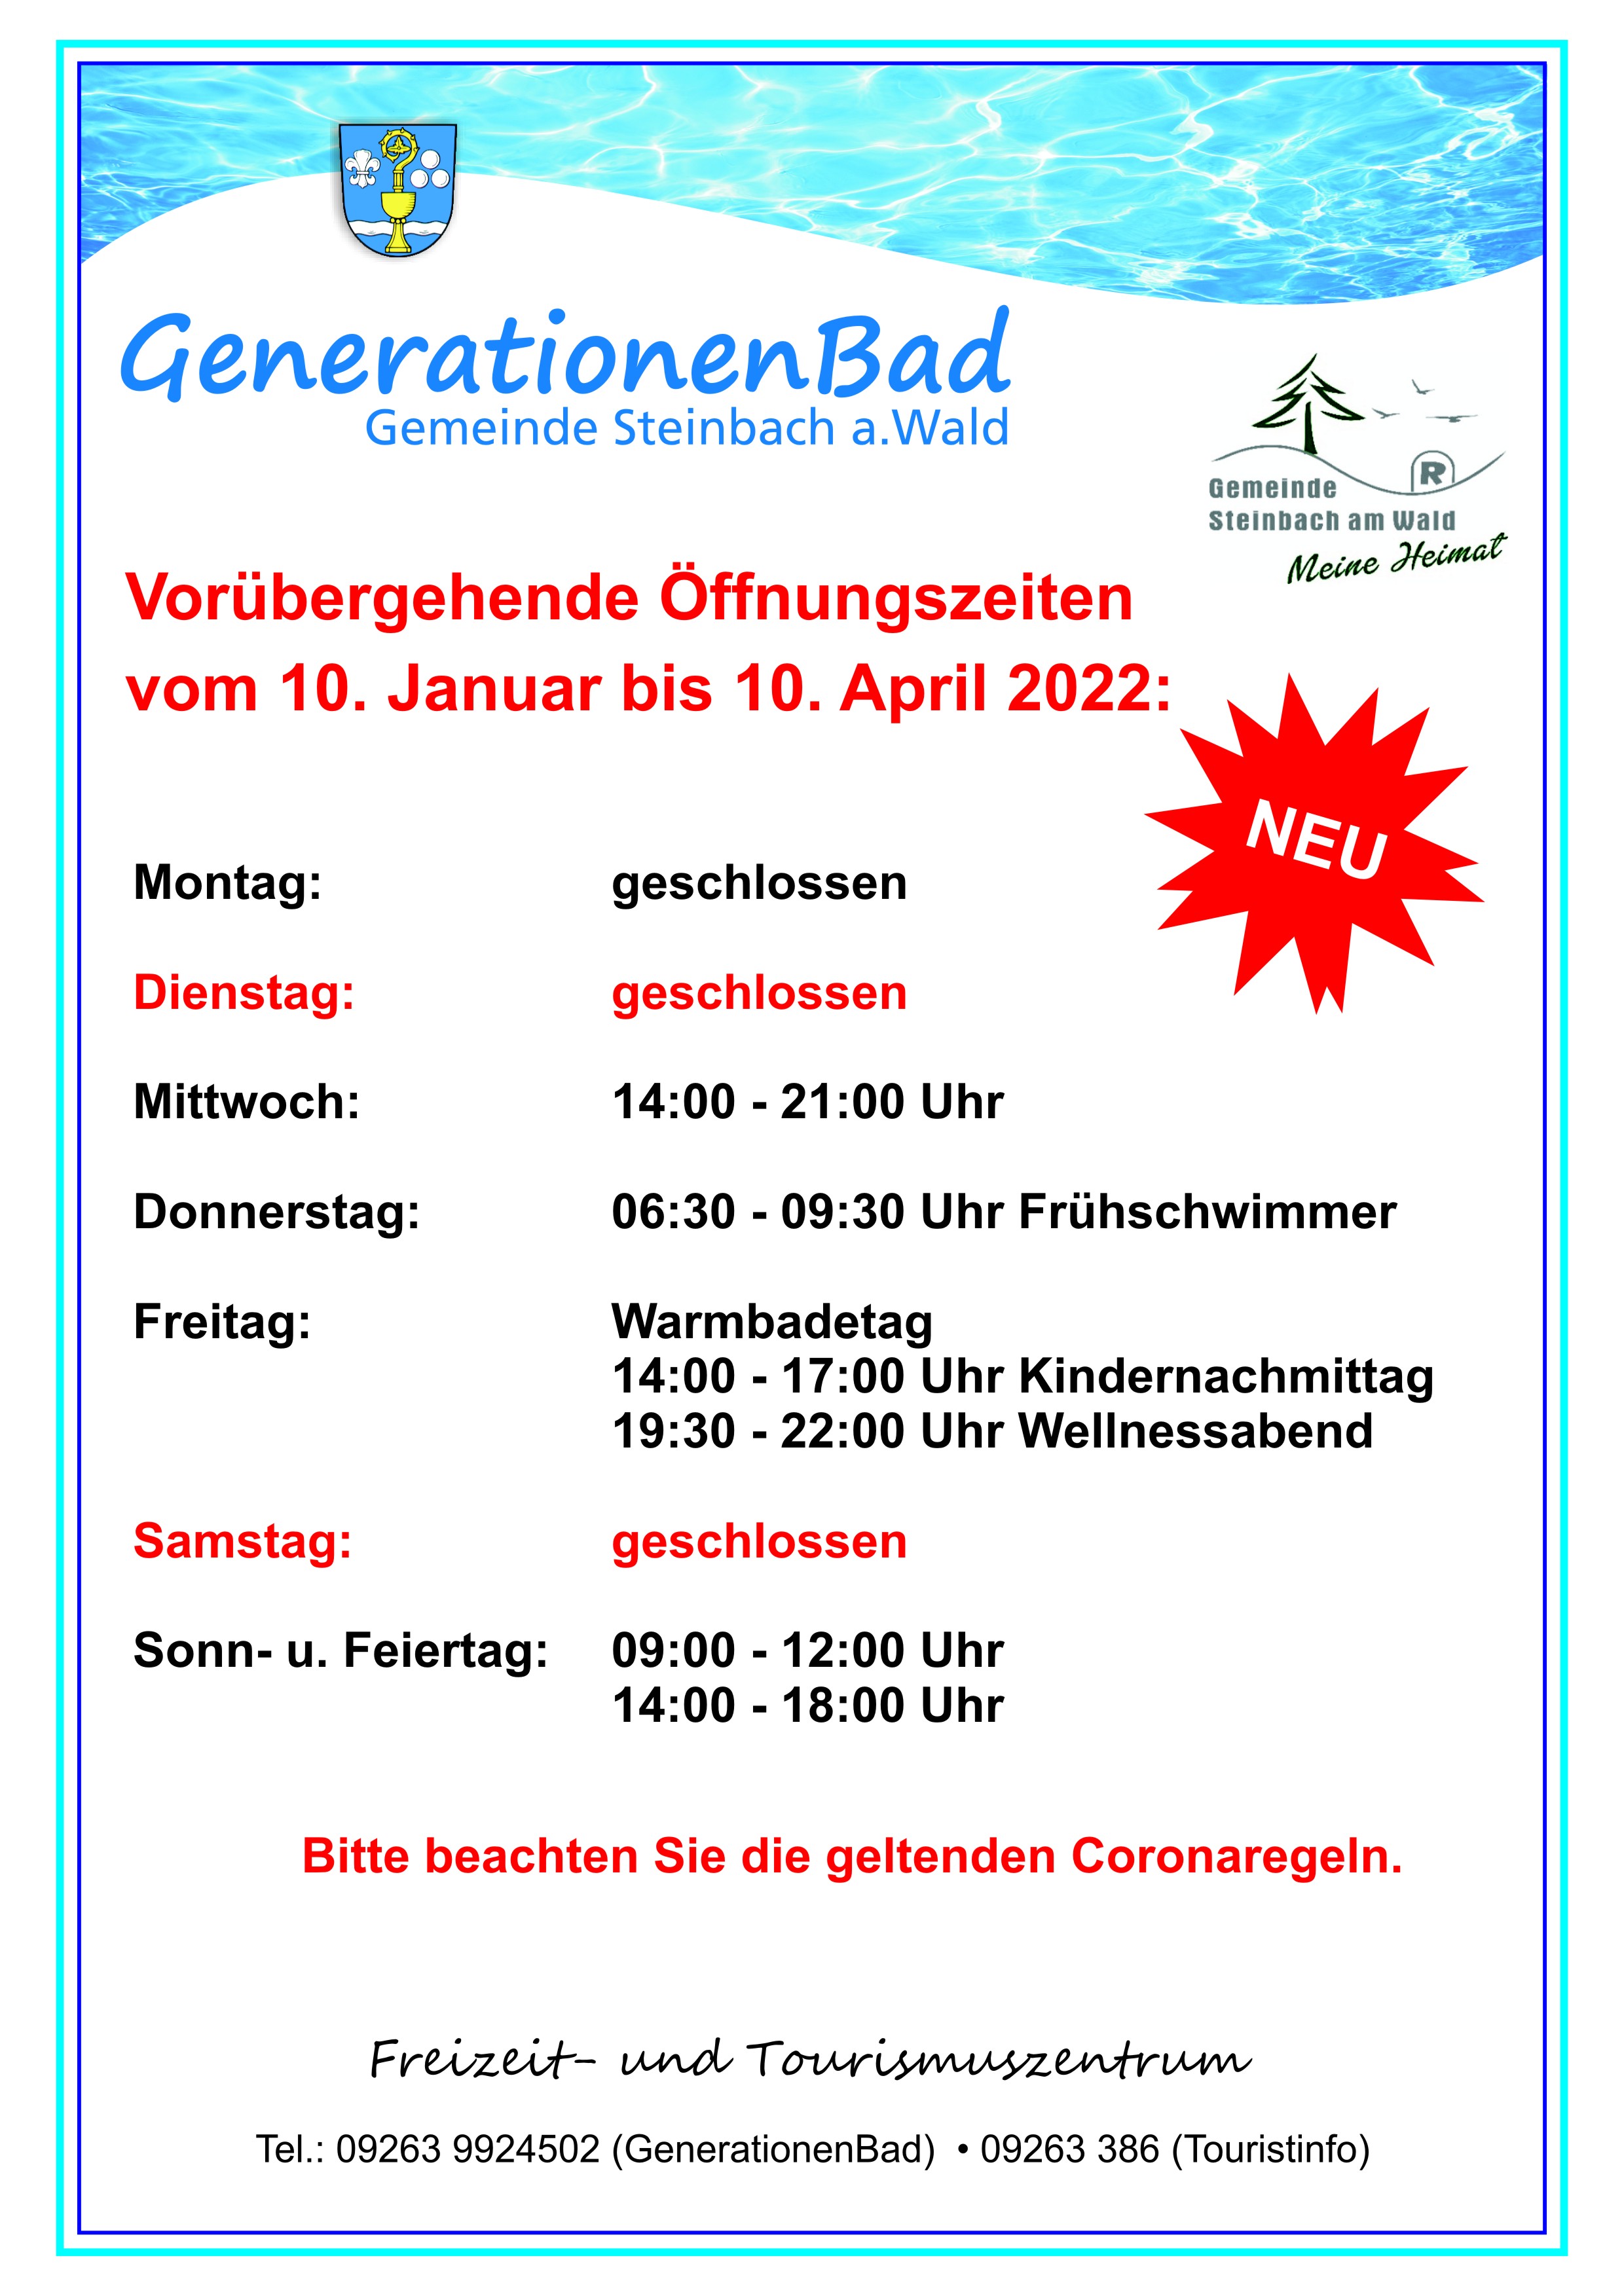 Geänderte Öffungszeiten GenerationenBad ab 10. Januar bis 10. April 2022